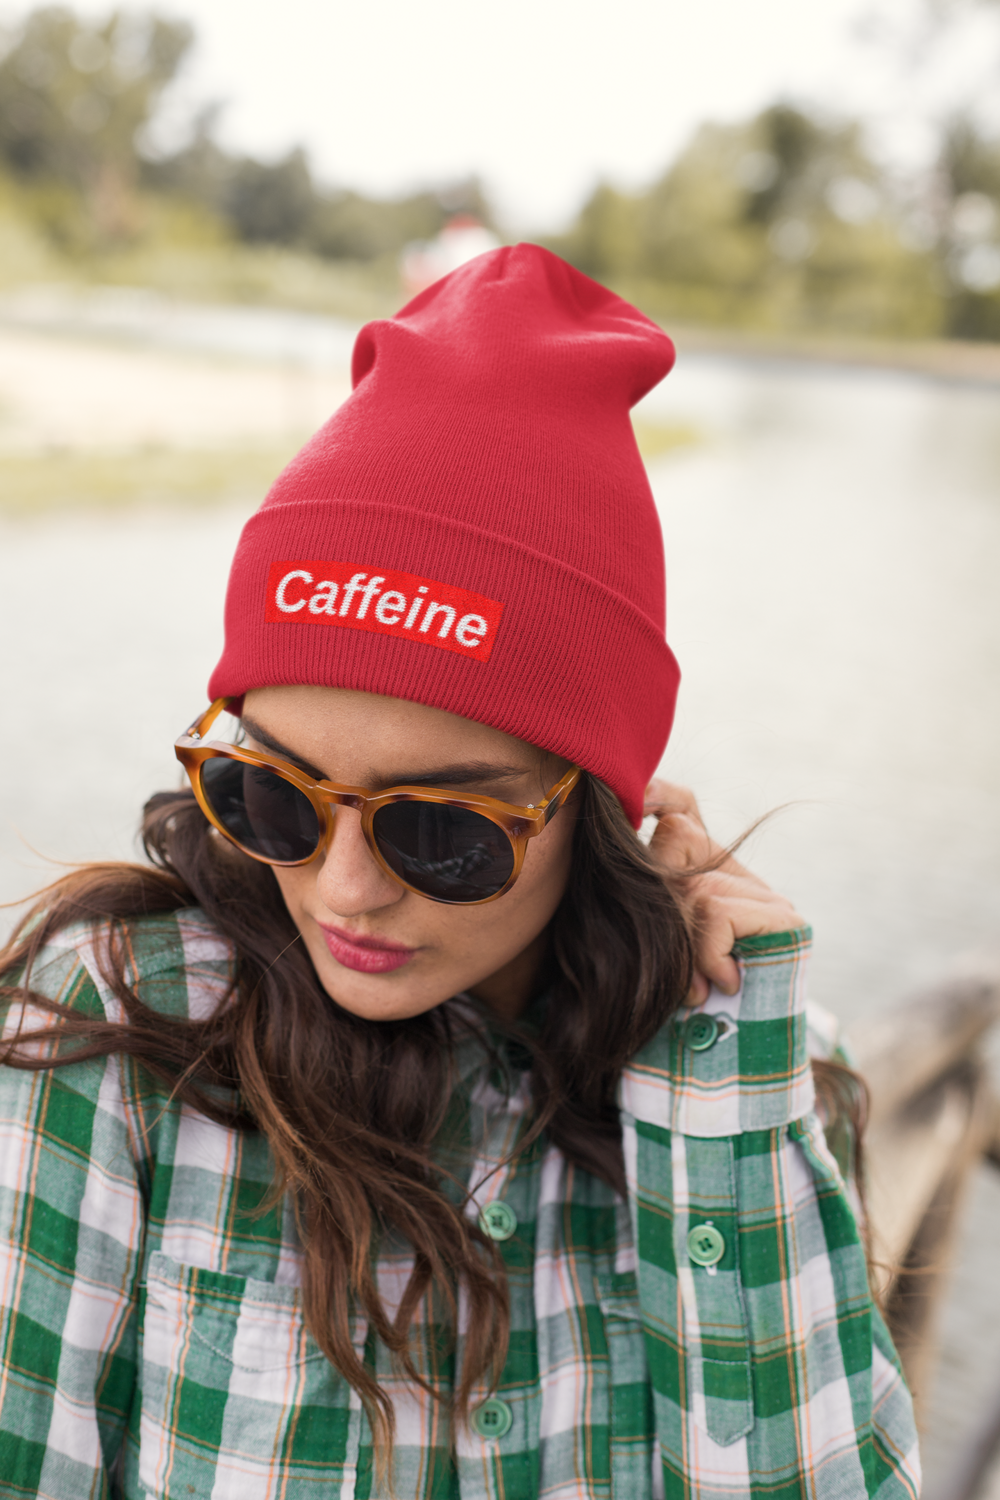 Caffeine Supreme Women's Embroidered Beanie